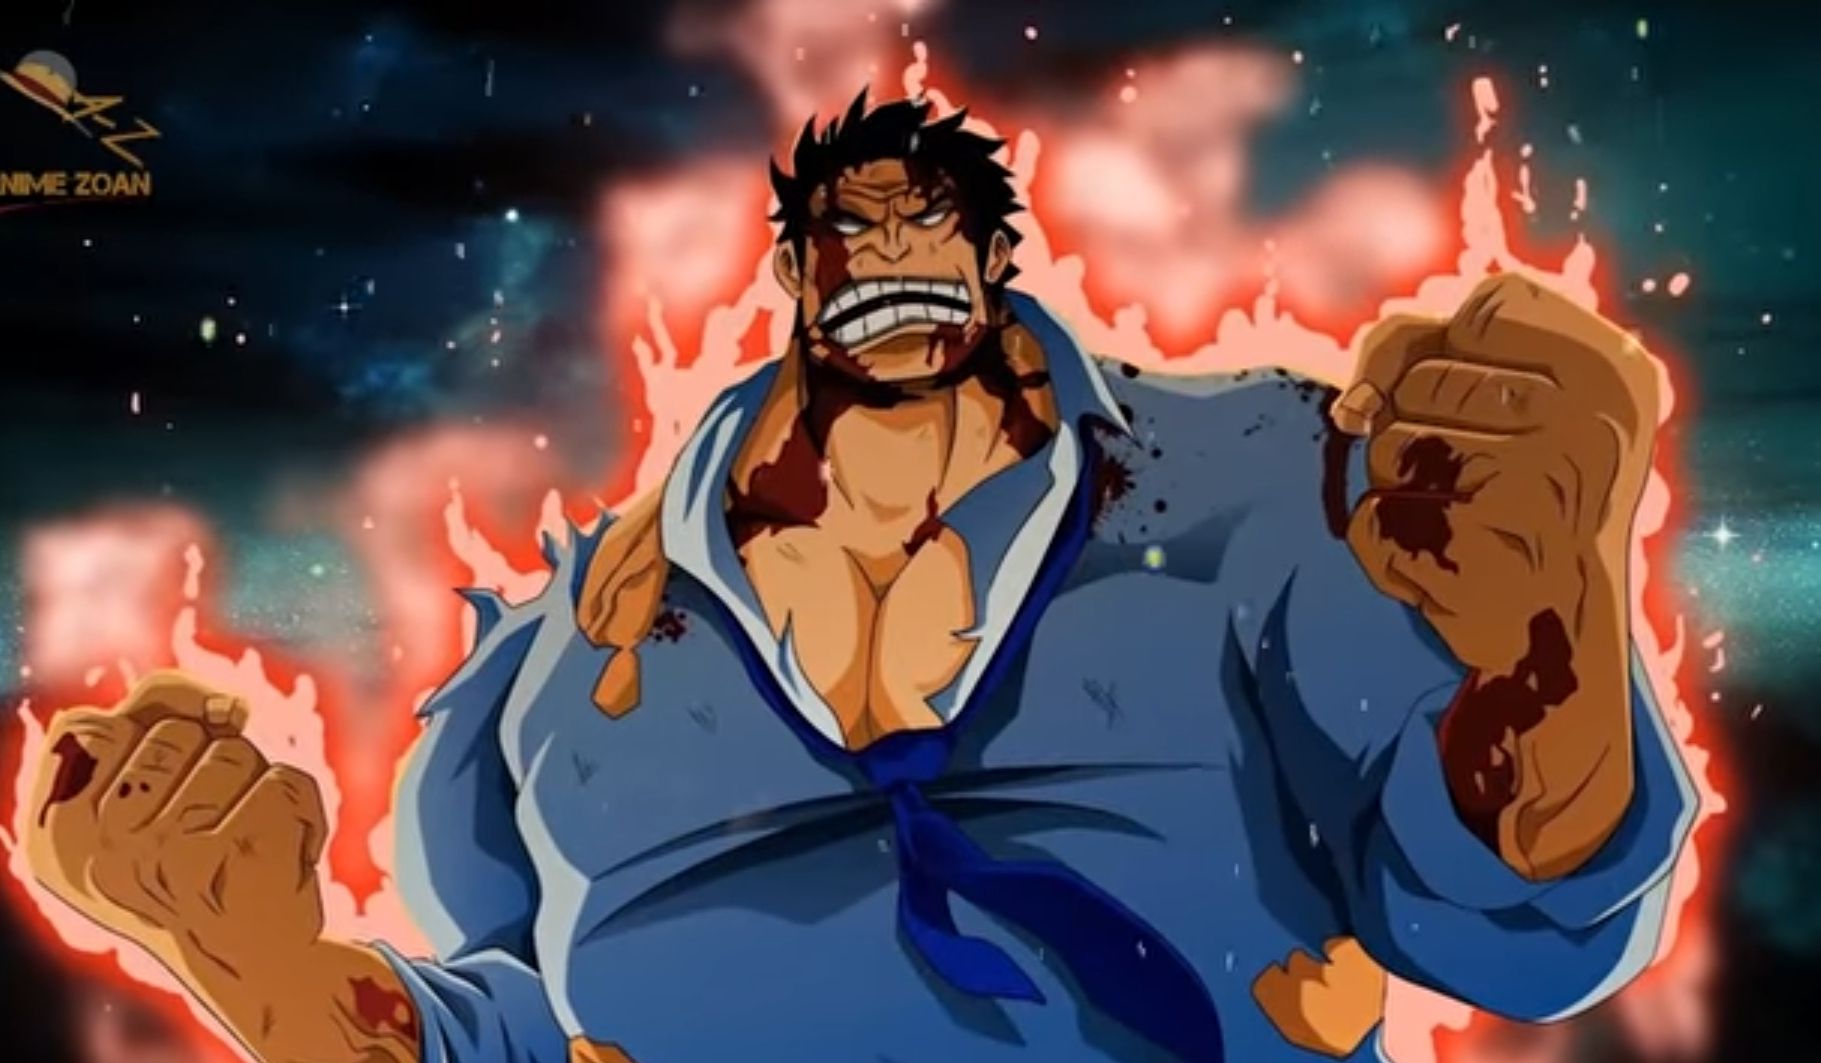 Inilah 6 Fakta Monkey D Garp, Sang Pahlawan Angkatan Laut di One Piece